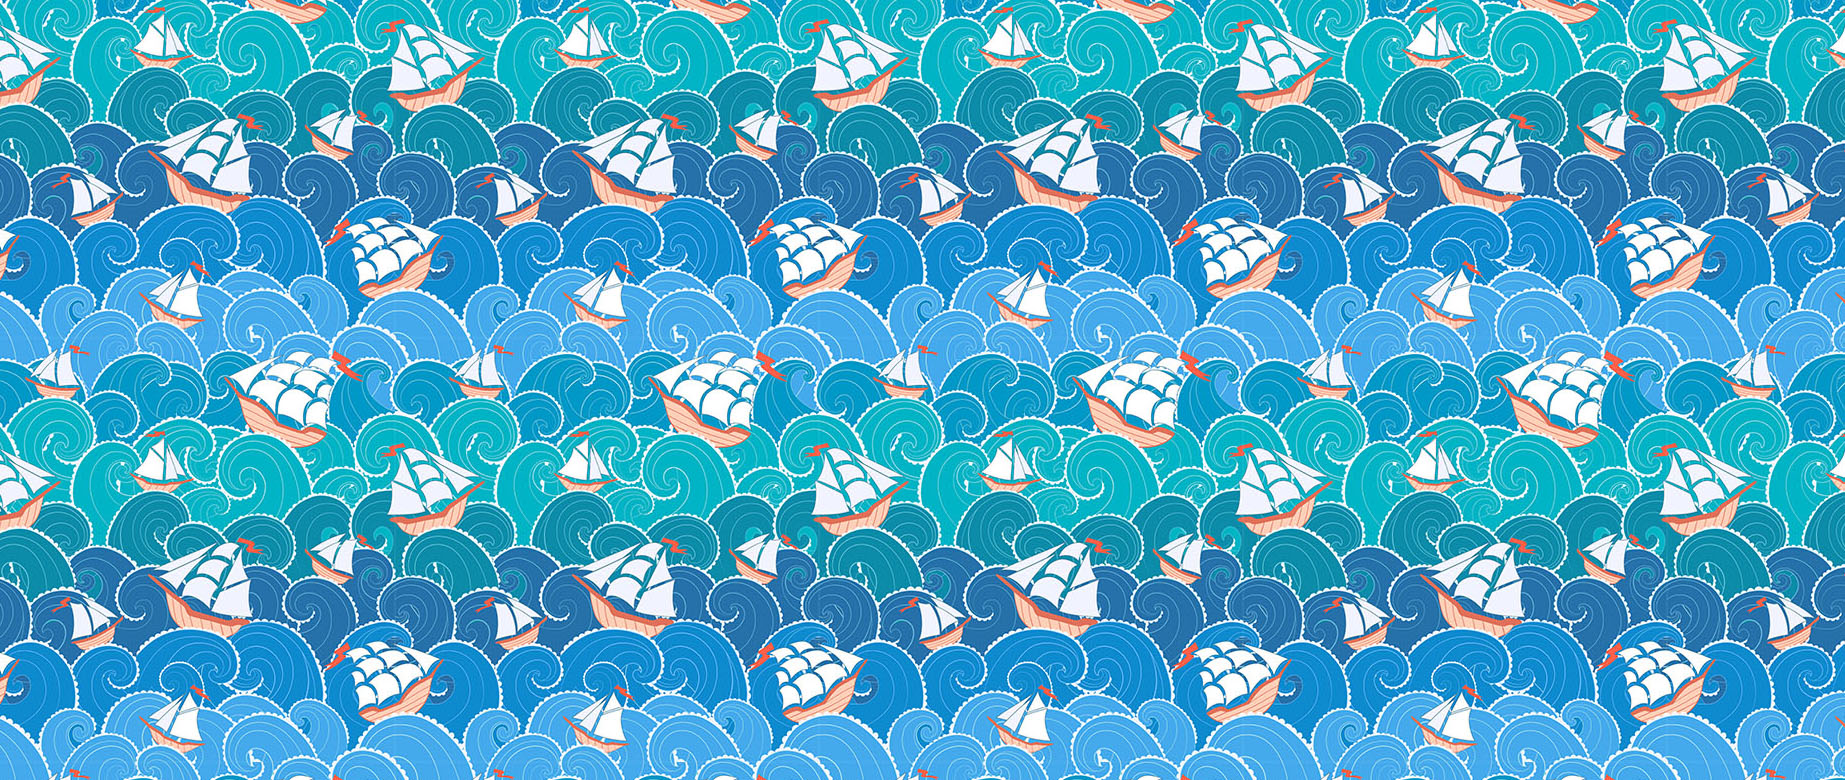 Cute-sail-boat-in-ocean-water-childrens-wallpaper-seamless-repeat-view